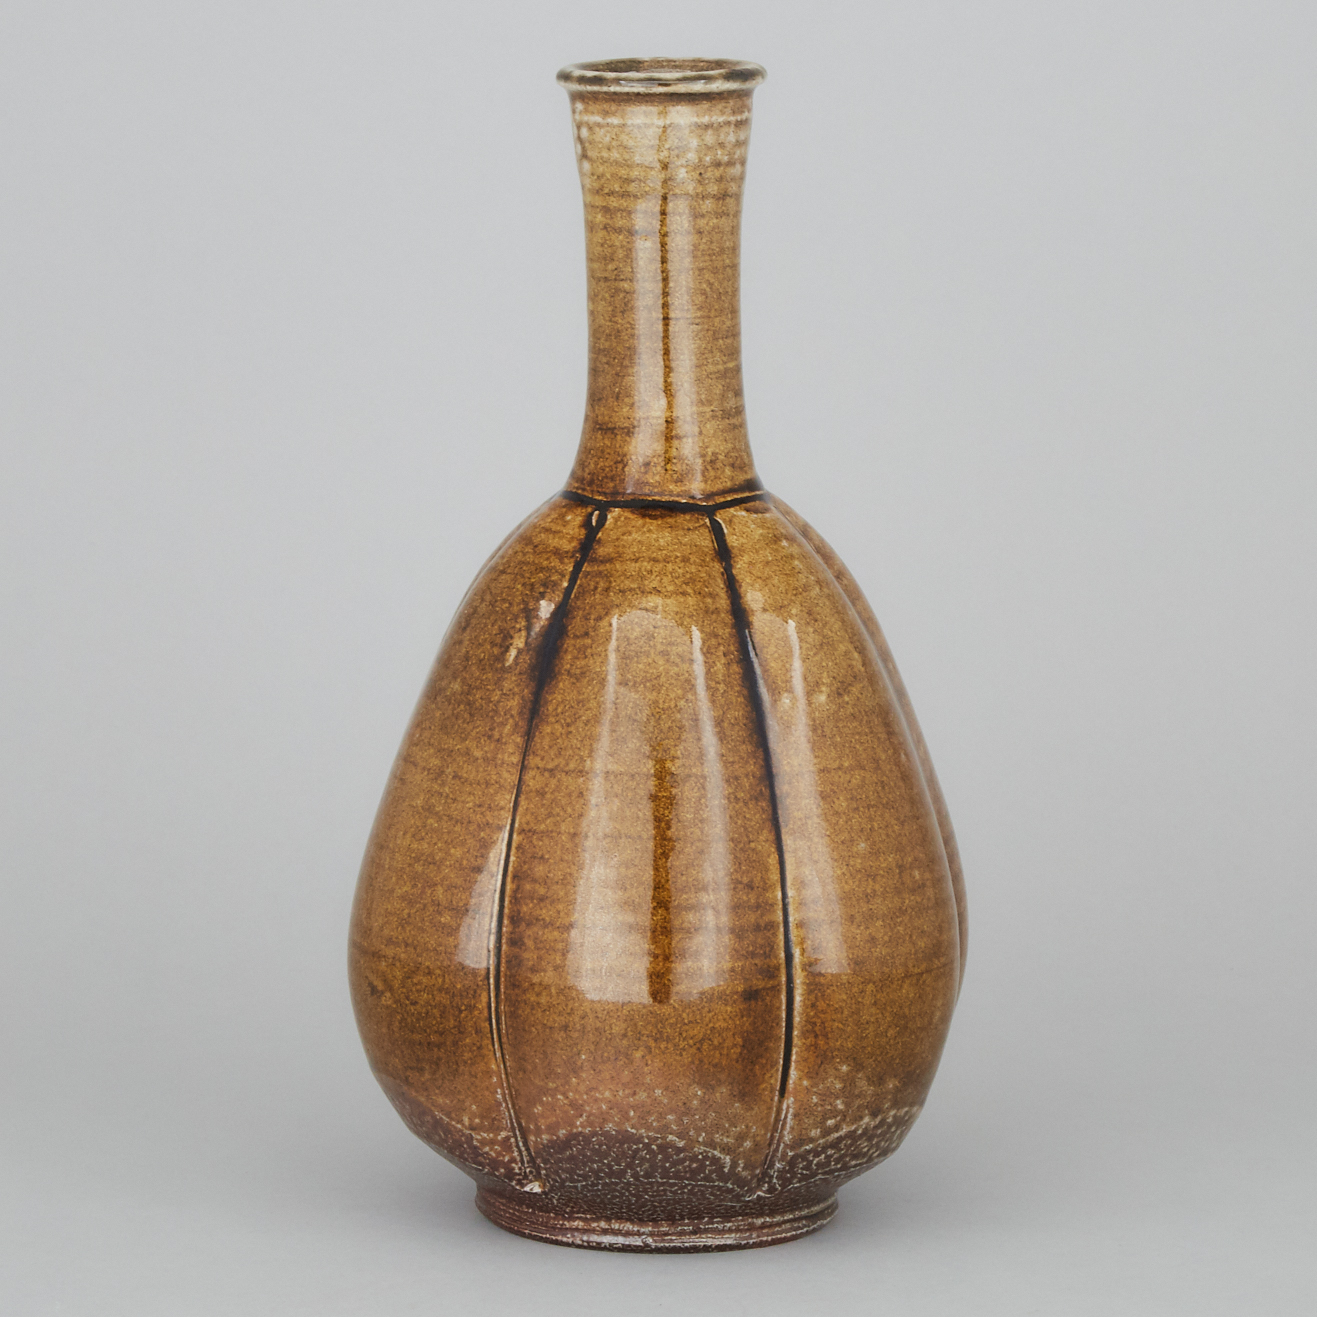 Robert Archambeau (Canadian, b.1933), Glazed Stoneware Vase, c.1994